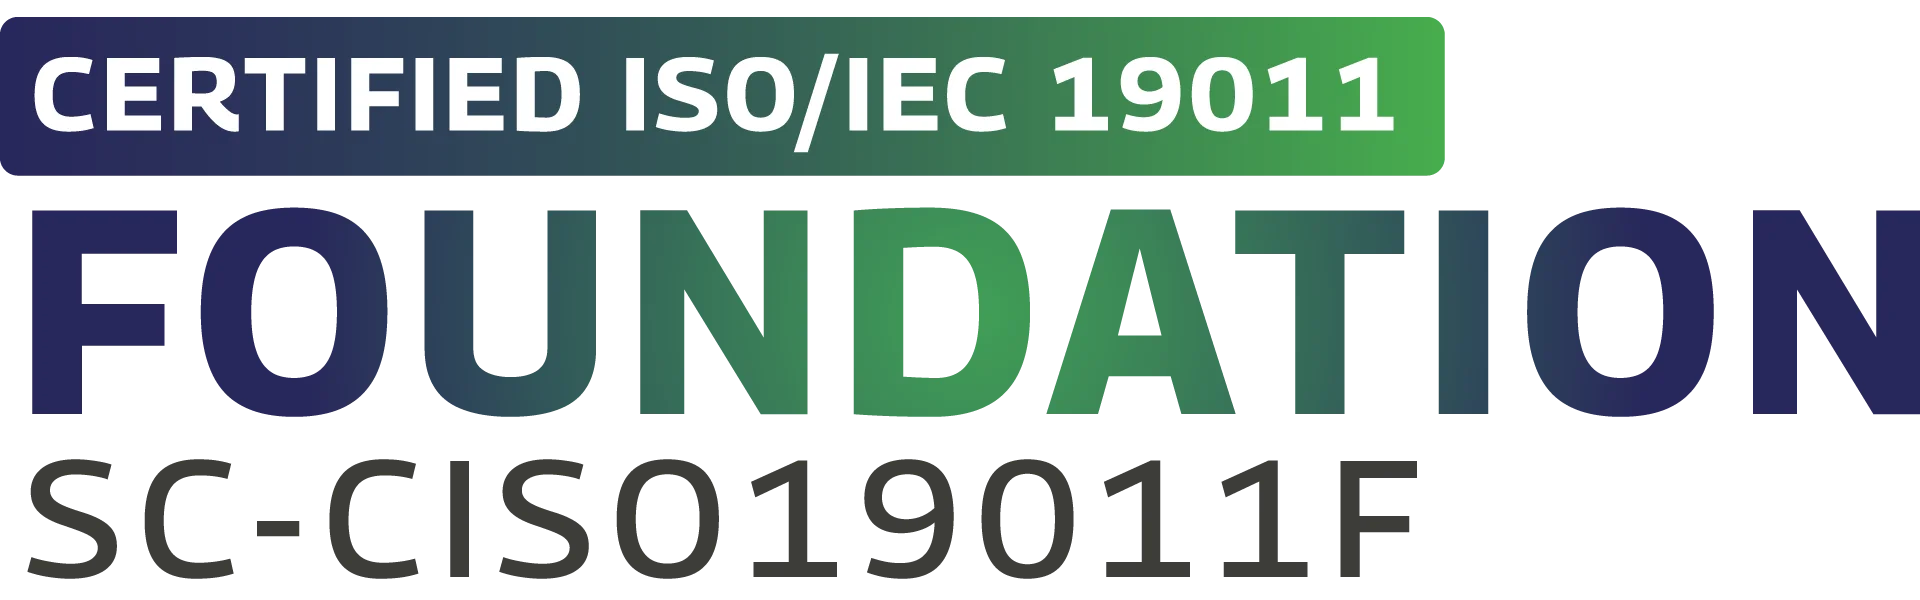 logo certificación Certified ISO/IEC 19011 Foundation